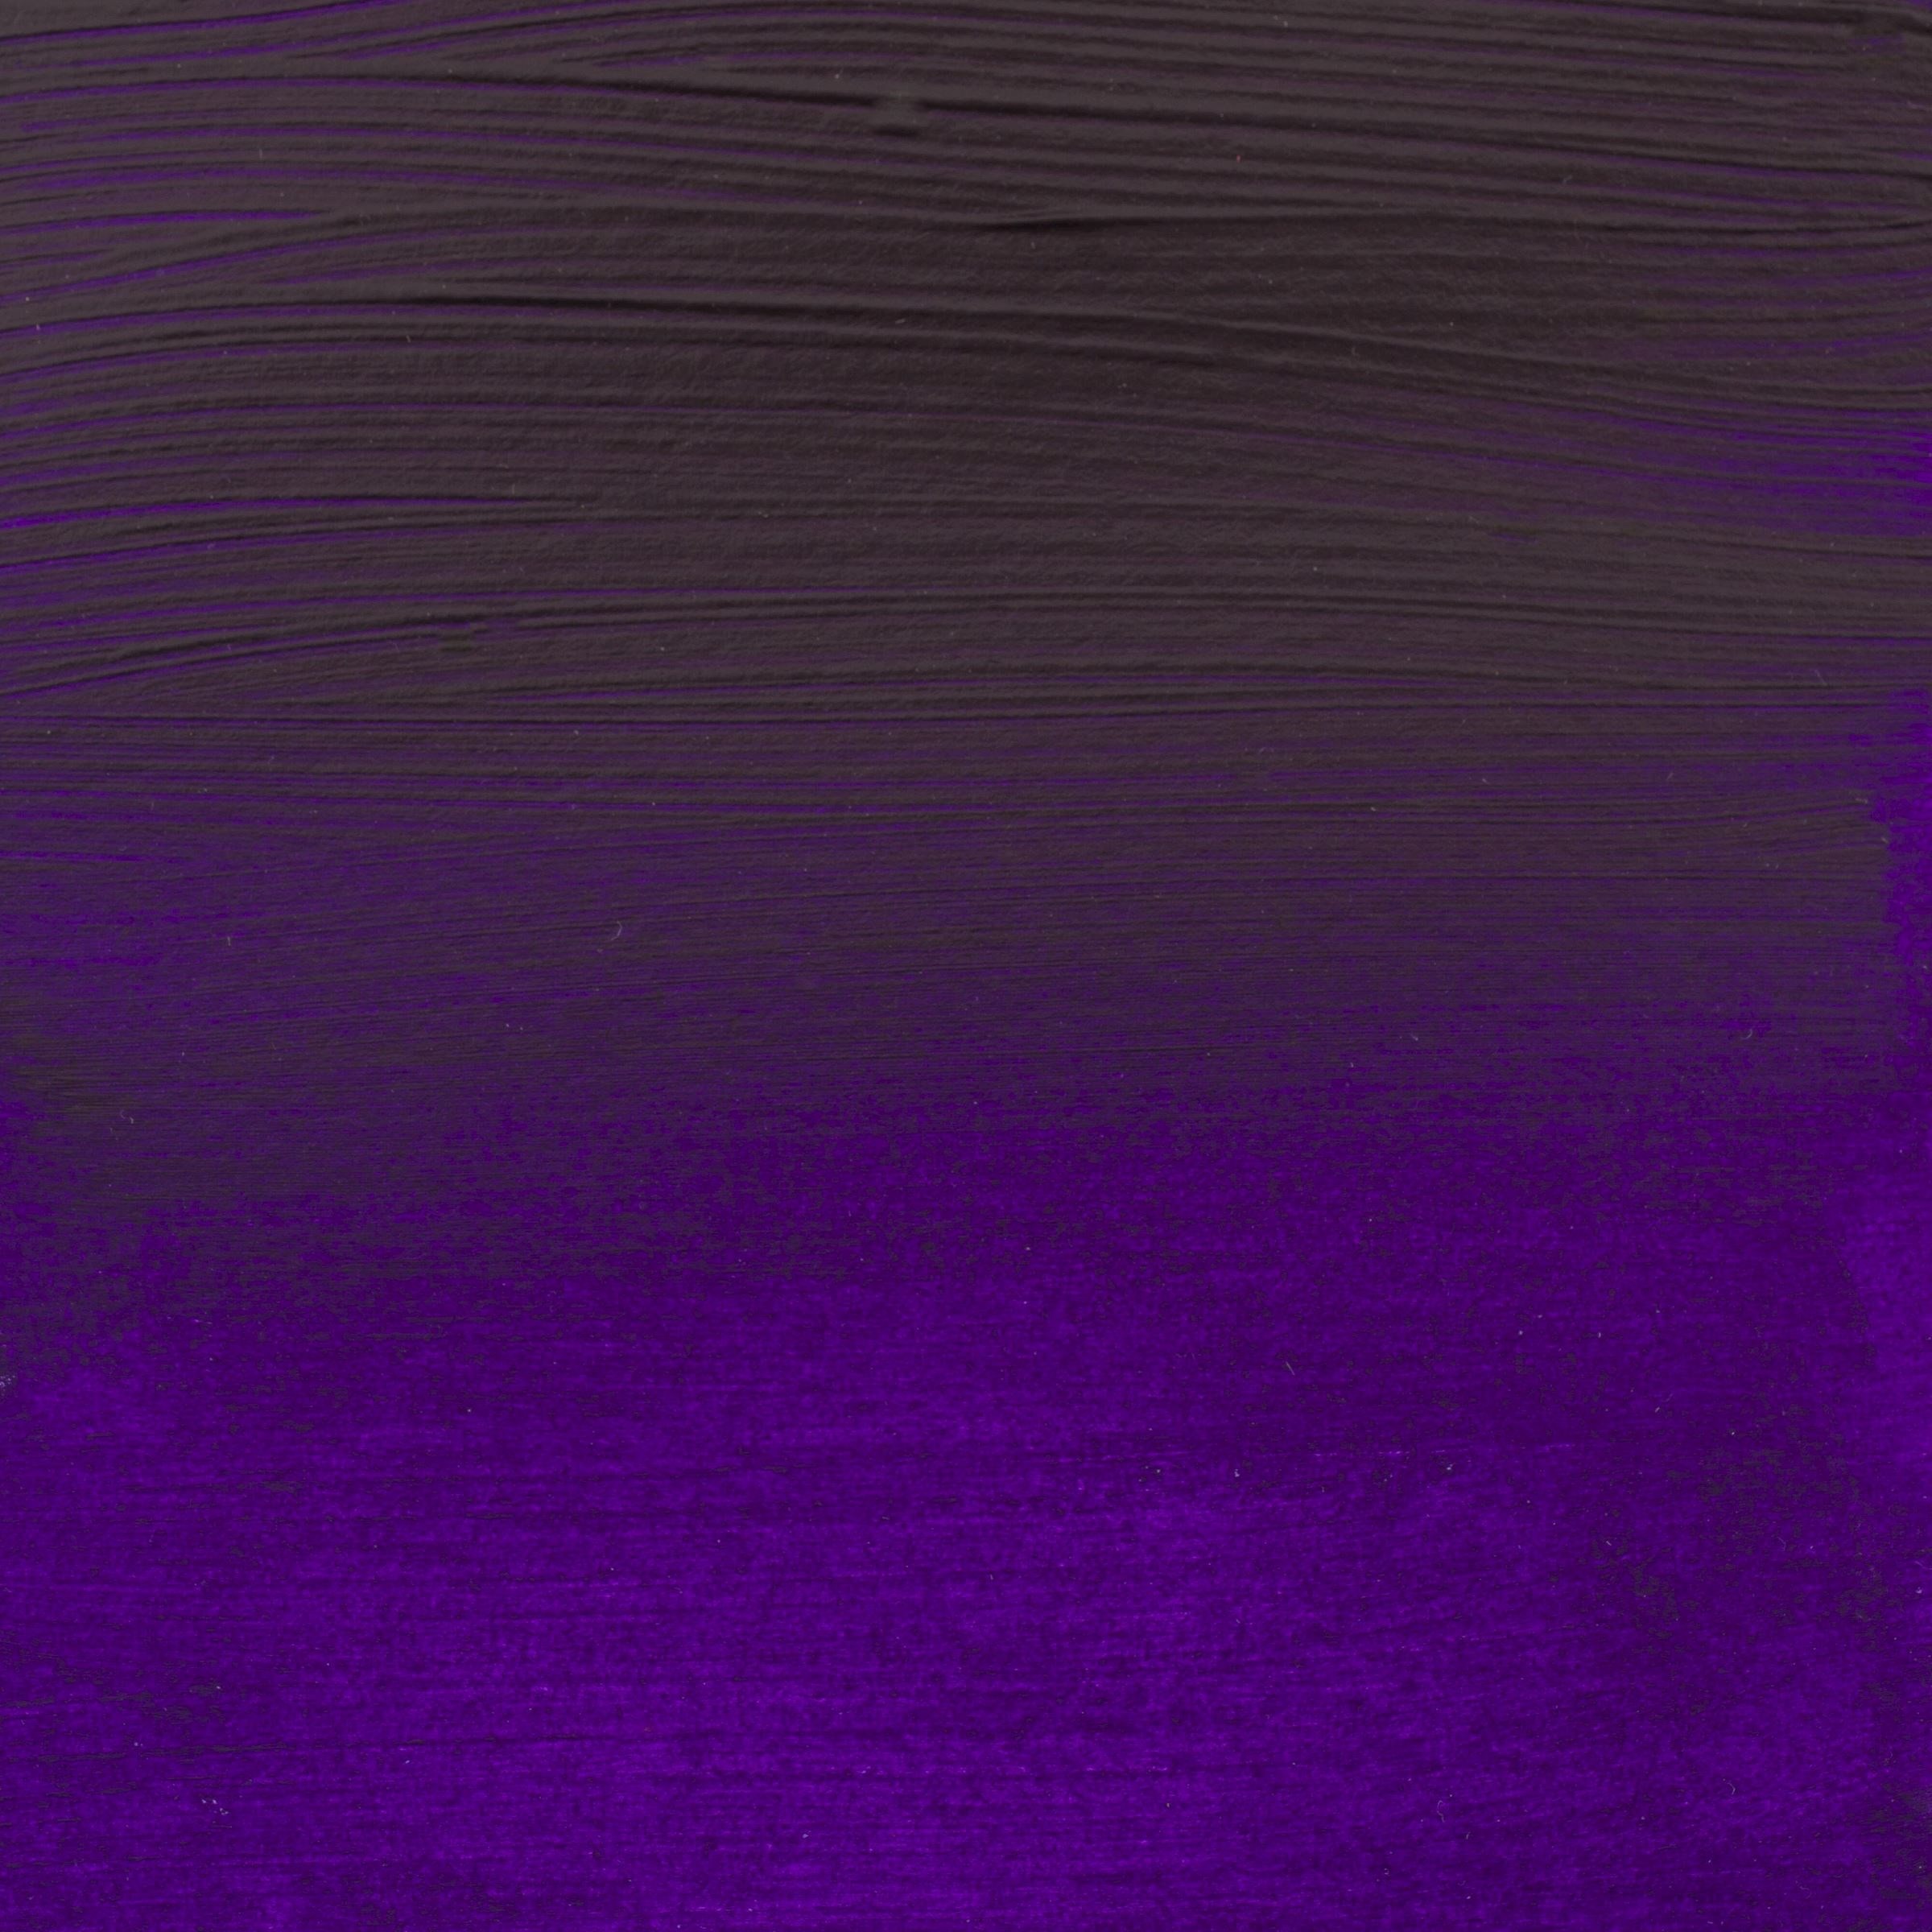 AMSTERDAM Peinture acrylique 500ml 17725682 permanent bleu/violet 568